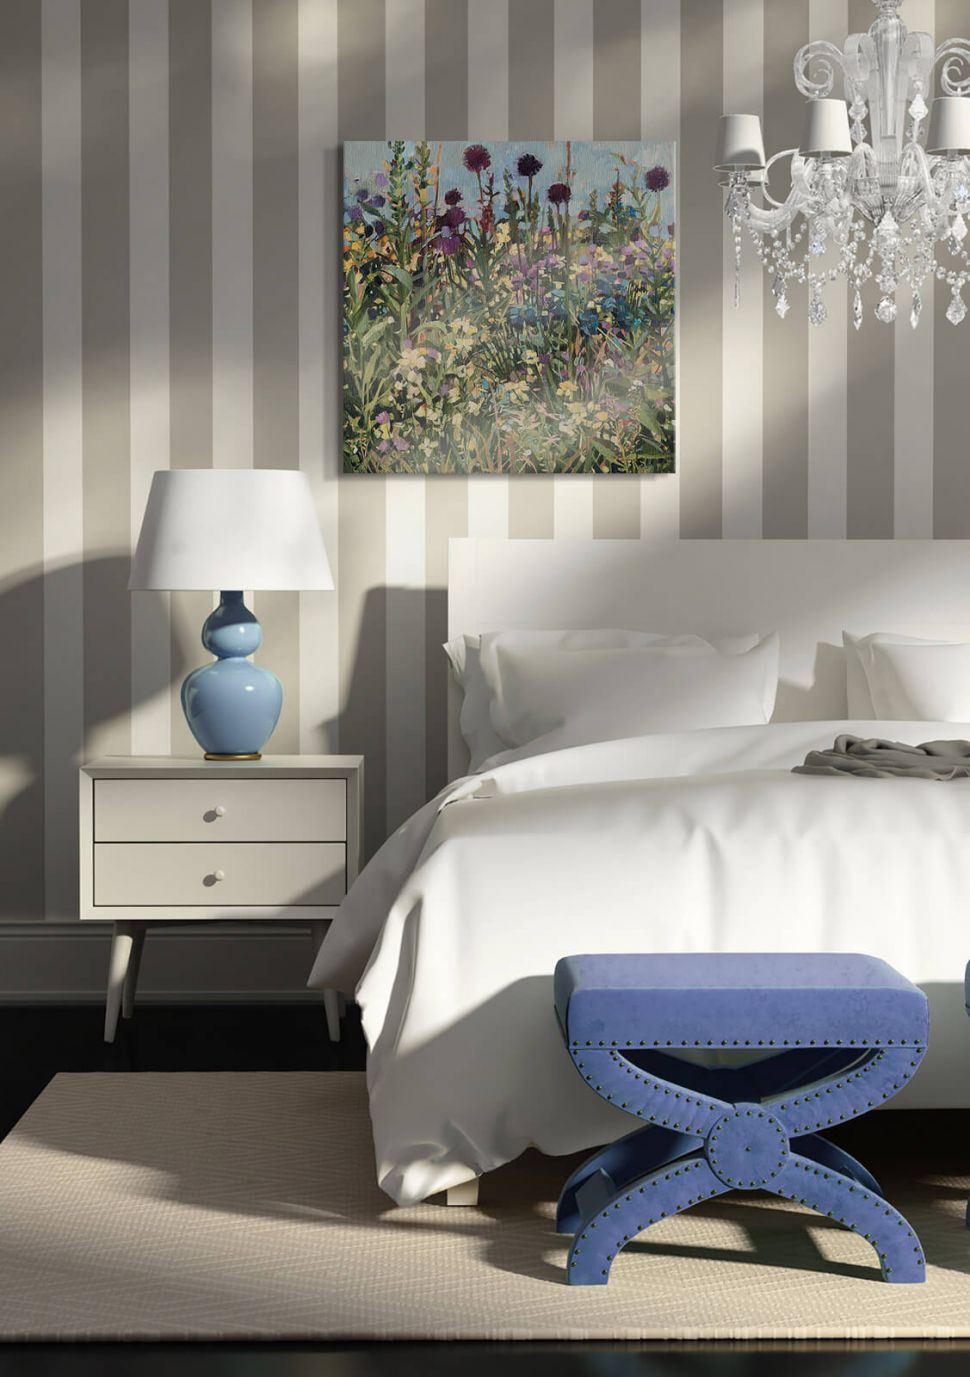 Obraz na płótnie przedstawiający łąkę o nazwie Bee Border powieszony w sypialni nad łóżkiem